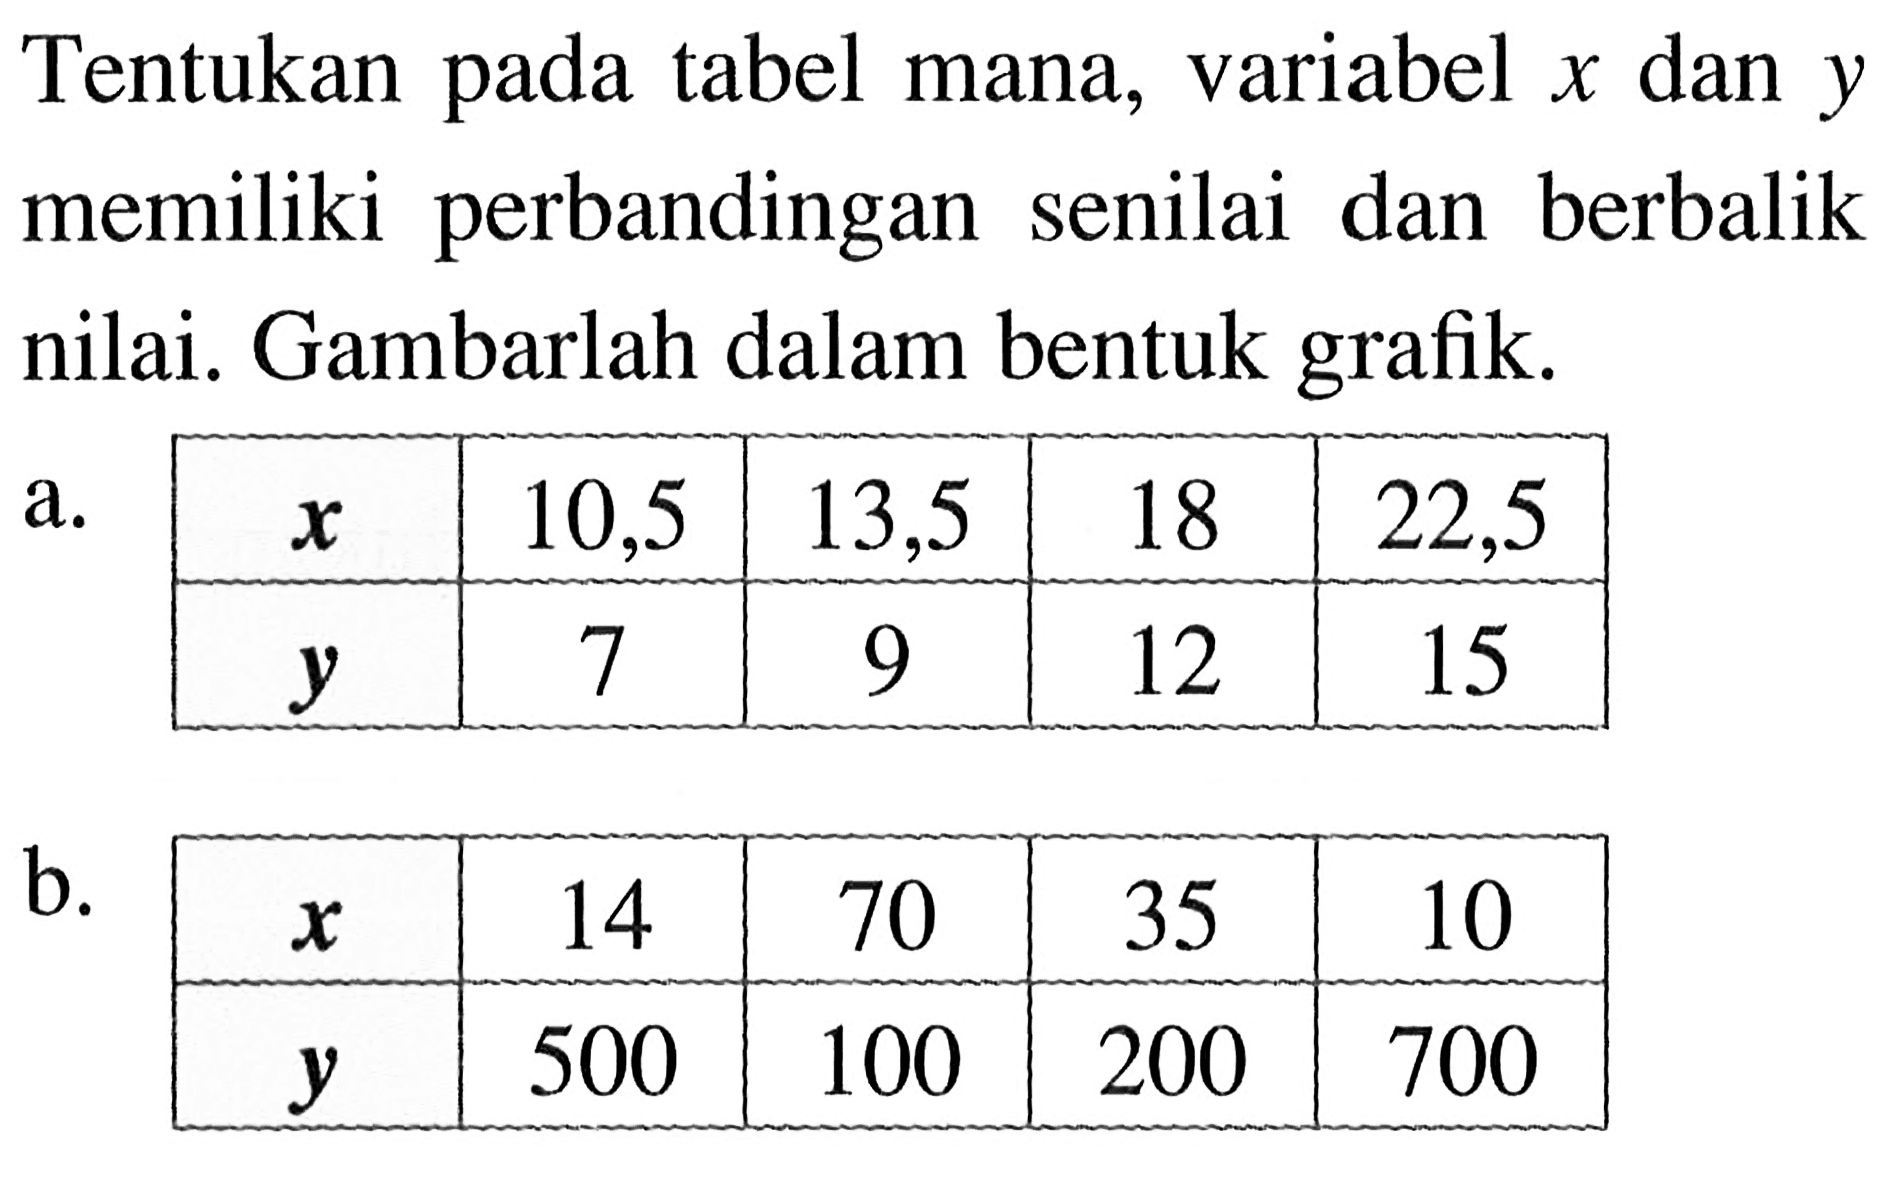 Tentukan pada tabel mana, variabel  x  dan  y  memiliki perbandingan senilai dan berbalik nilai. Gambarlah dalam bentuk grafik.a.  x   10,5  13,5  18  22,5   y   7  9  12  15 b.  x   14  70  35  10   y   500  100  200  700 